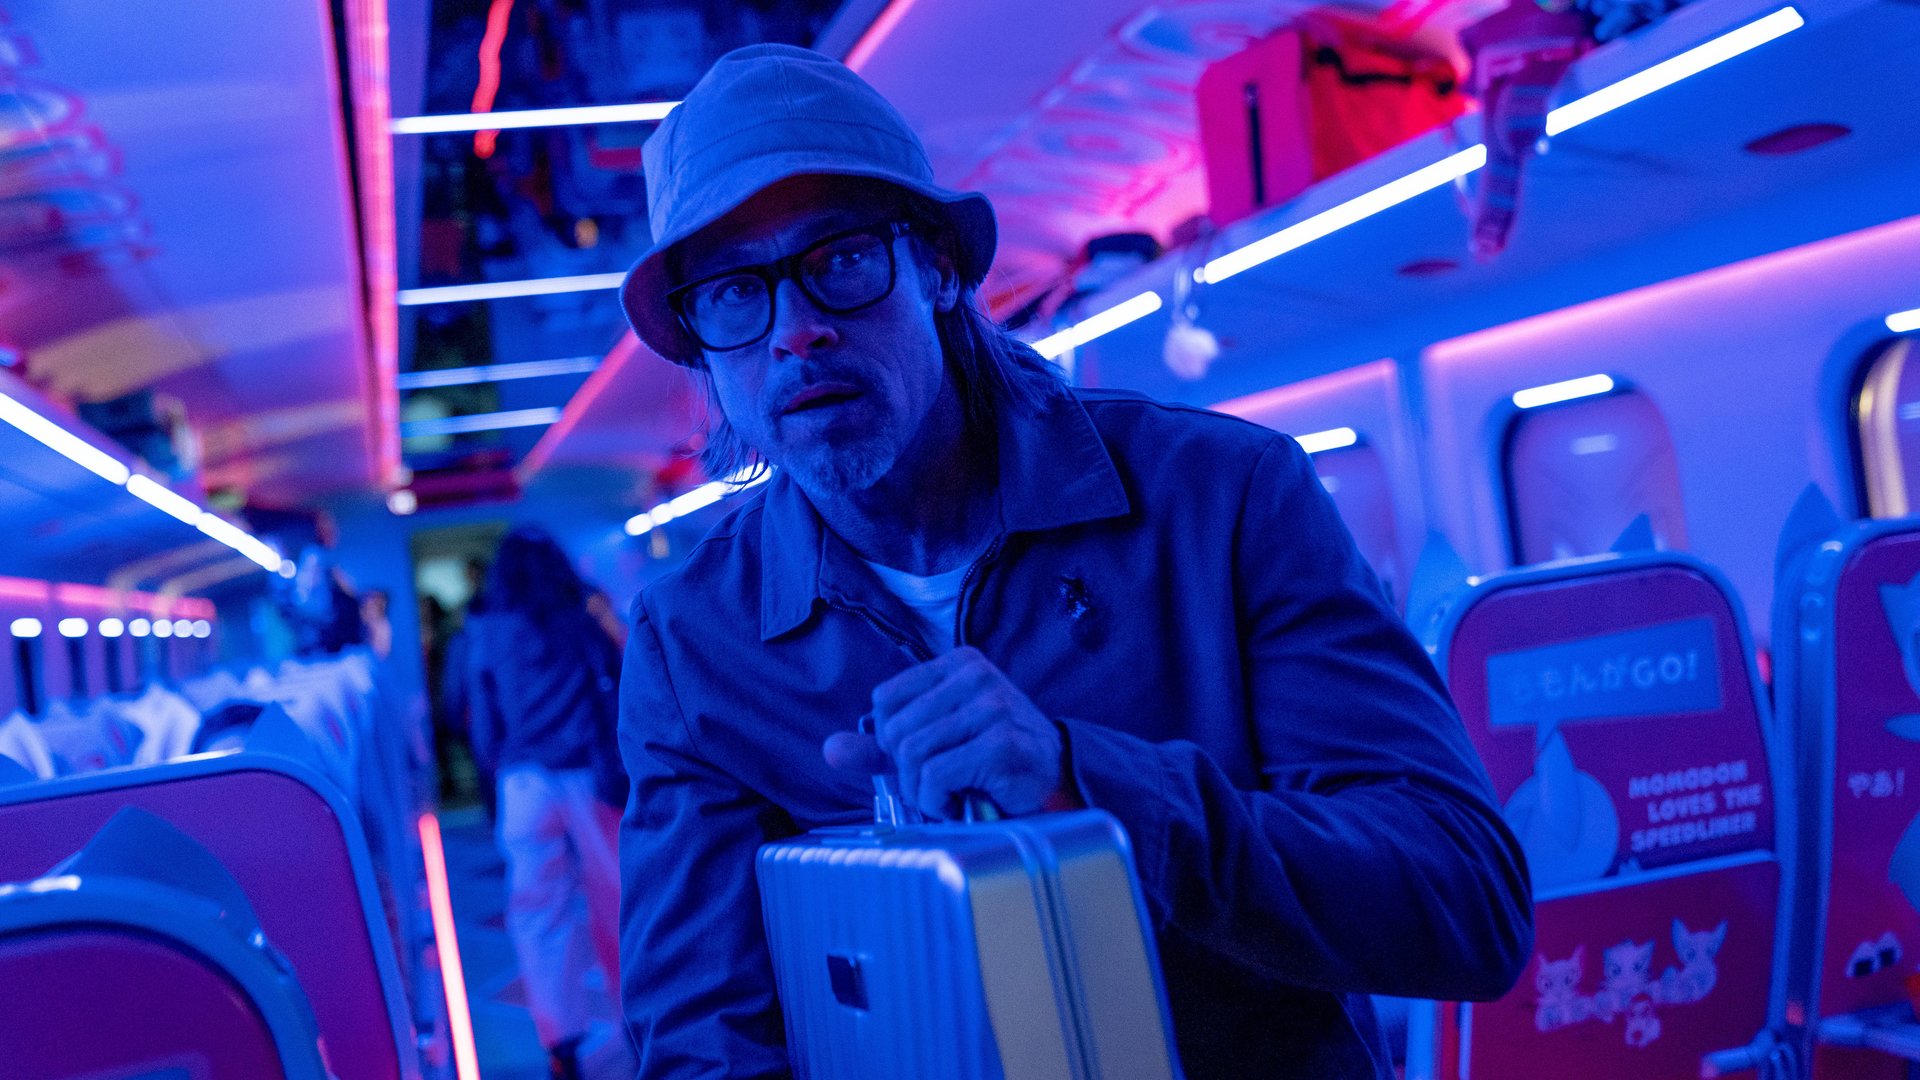 #Irrer Action-Trailer zu „Bullet Train“: „John Wick“-Macher jagt Brad Pitt durch Zug voller Killer